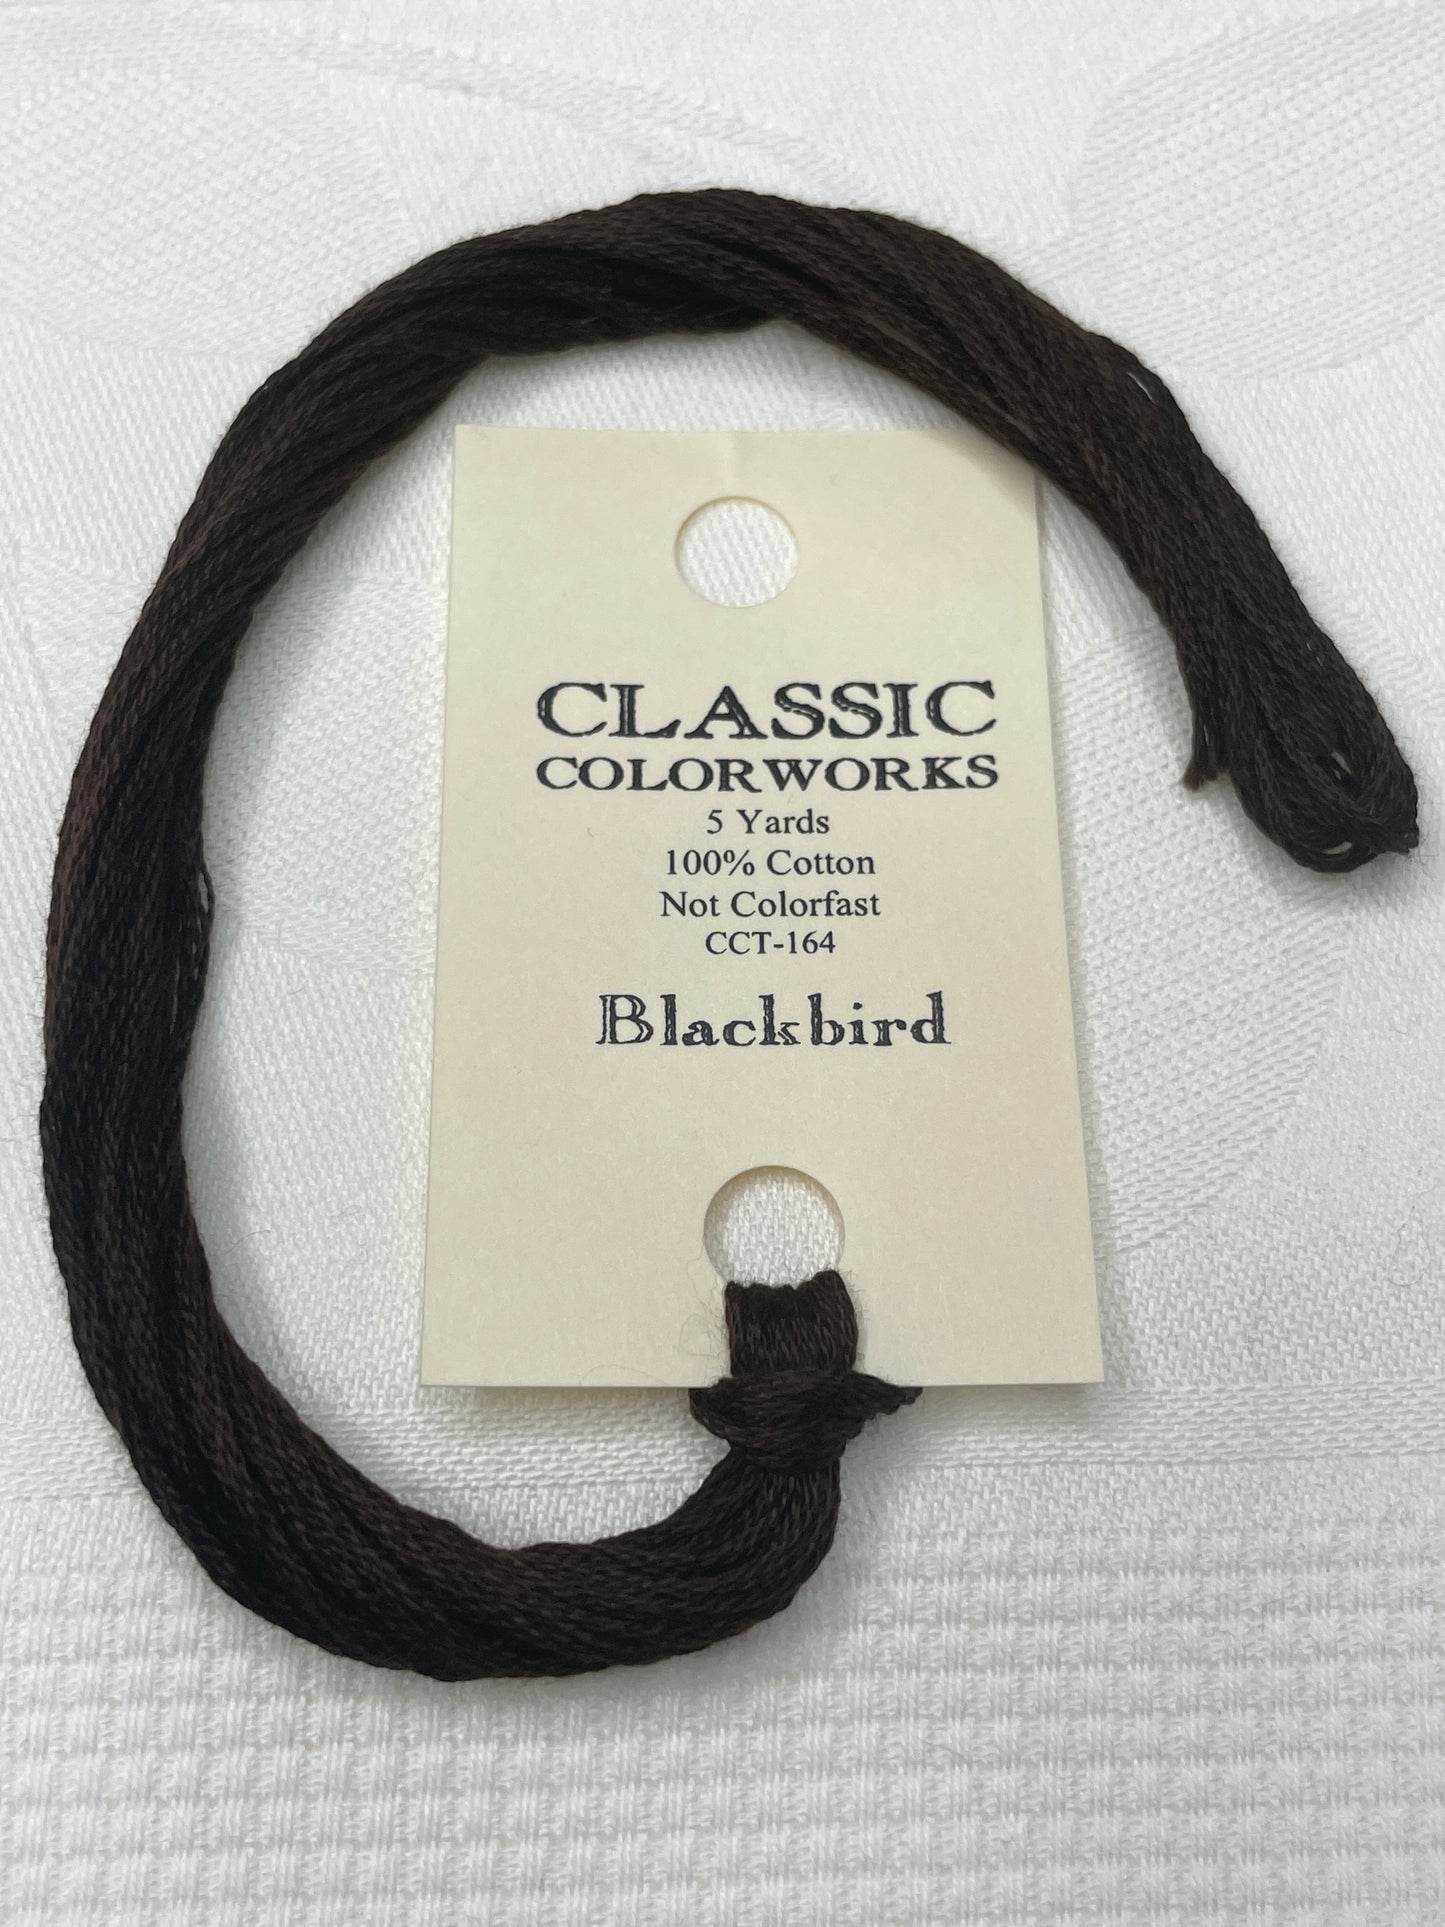 Blackbird CCW